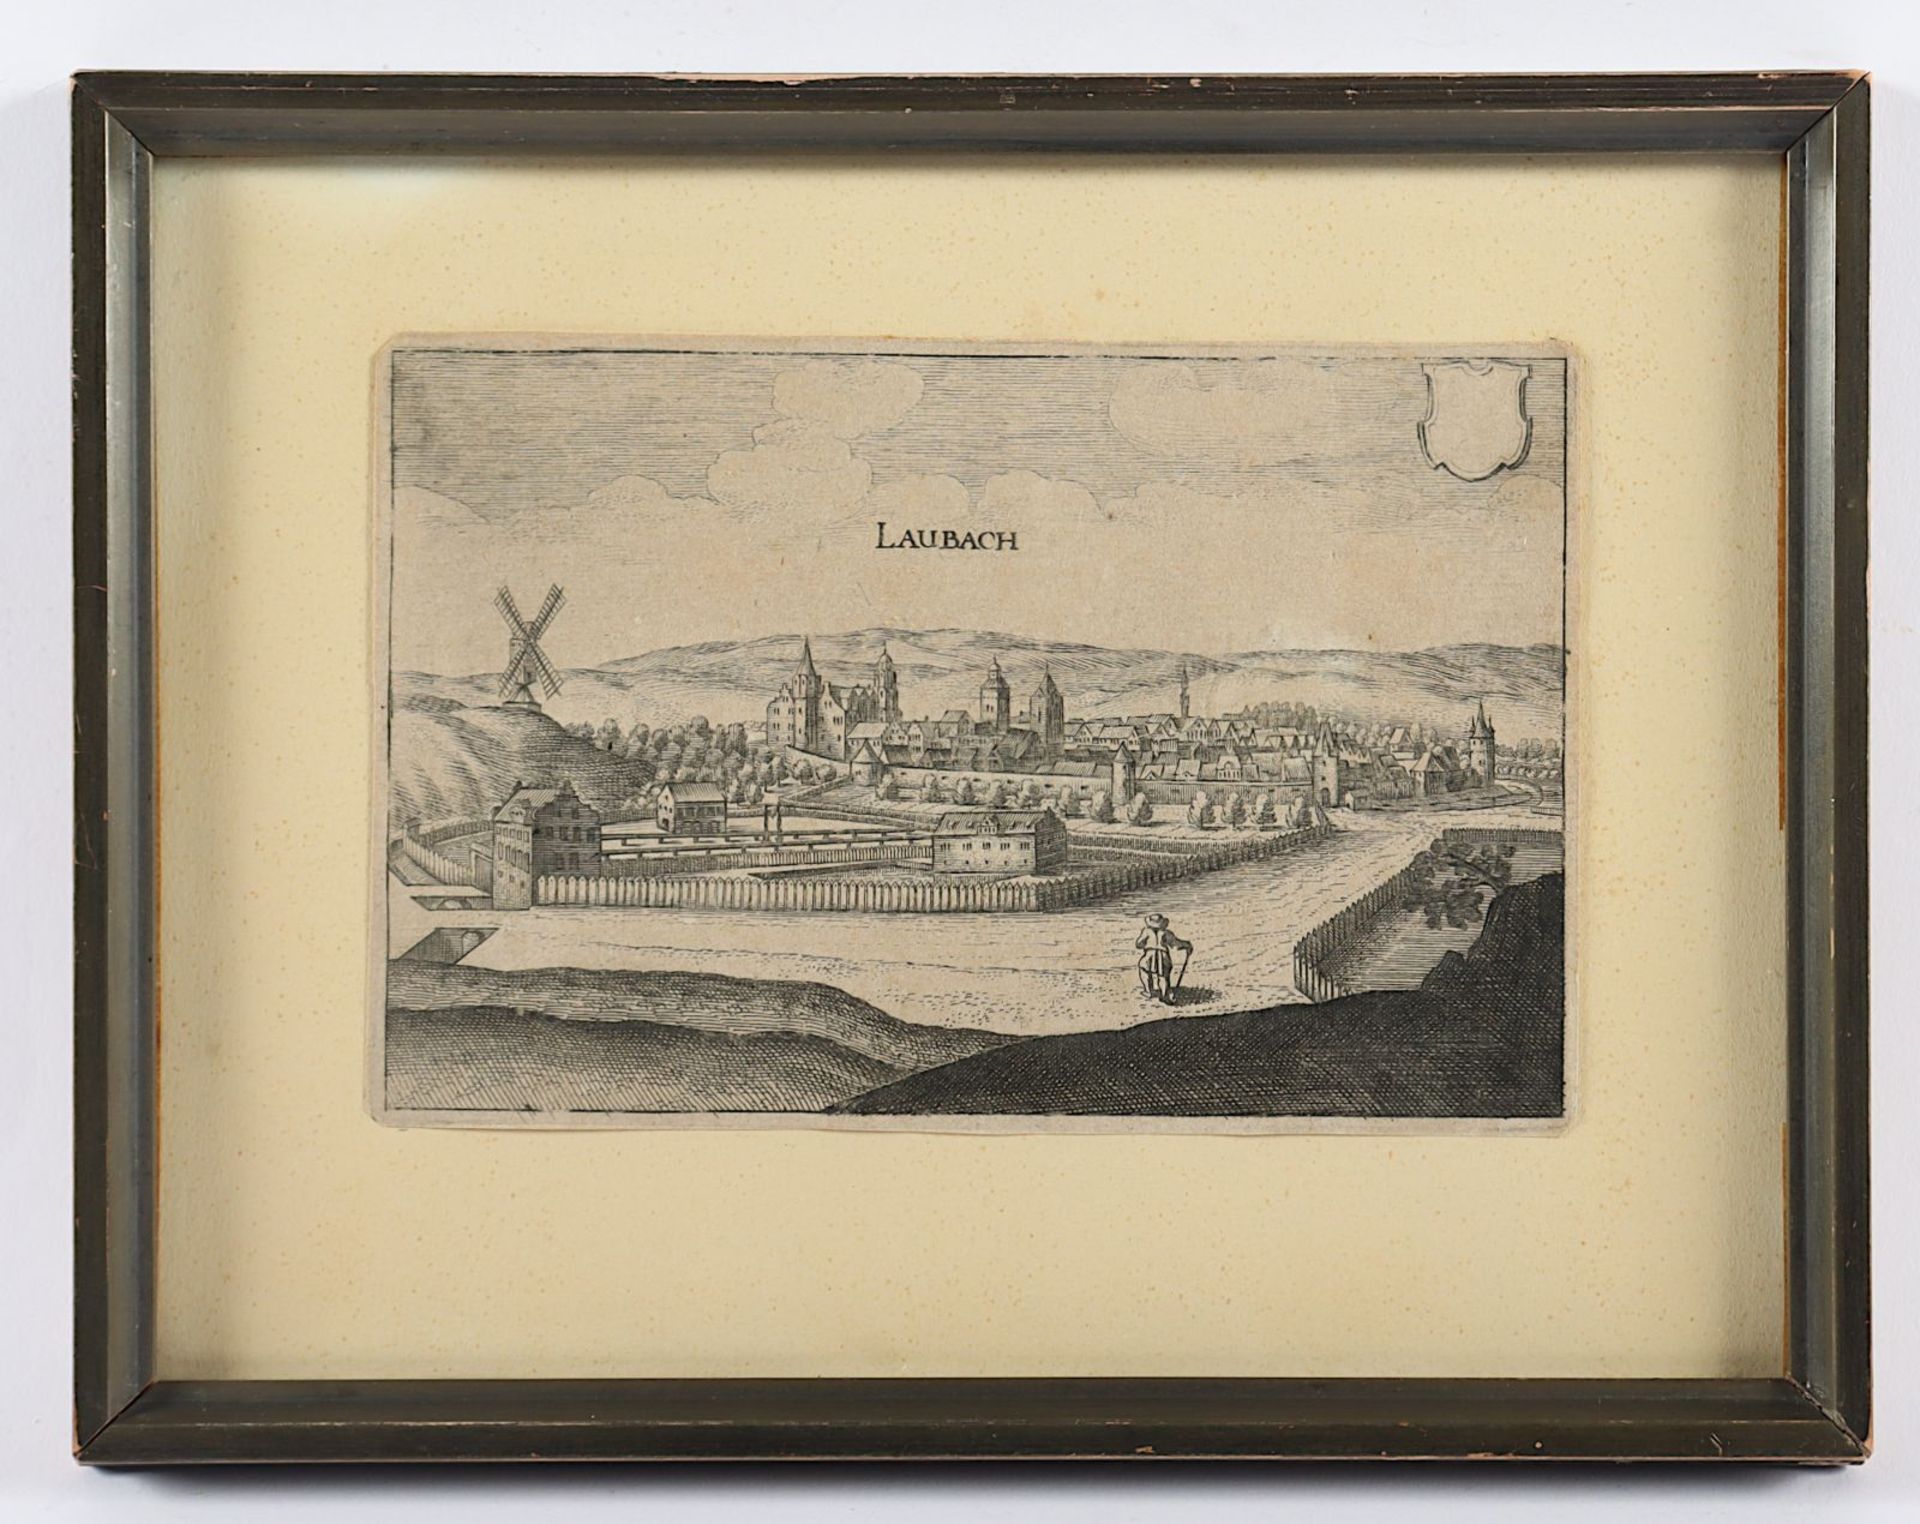 Laubach, Kupferstich, Merian, um 1640, R.